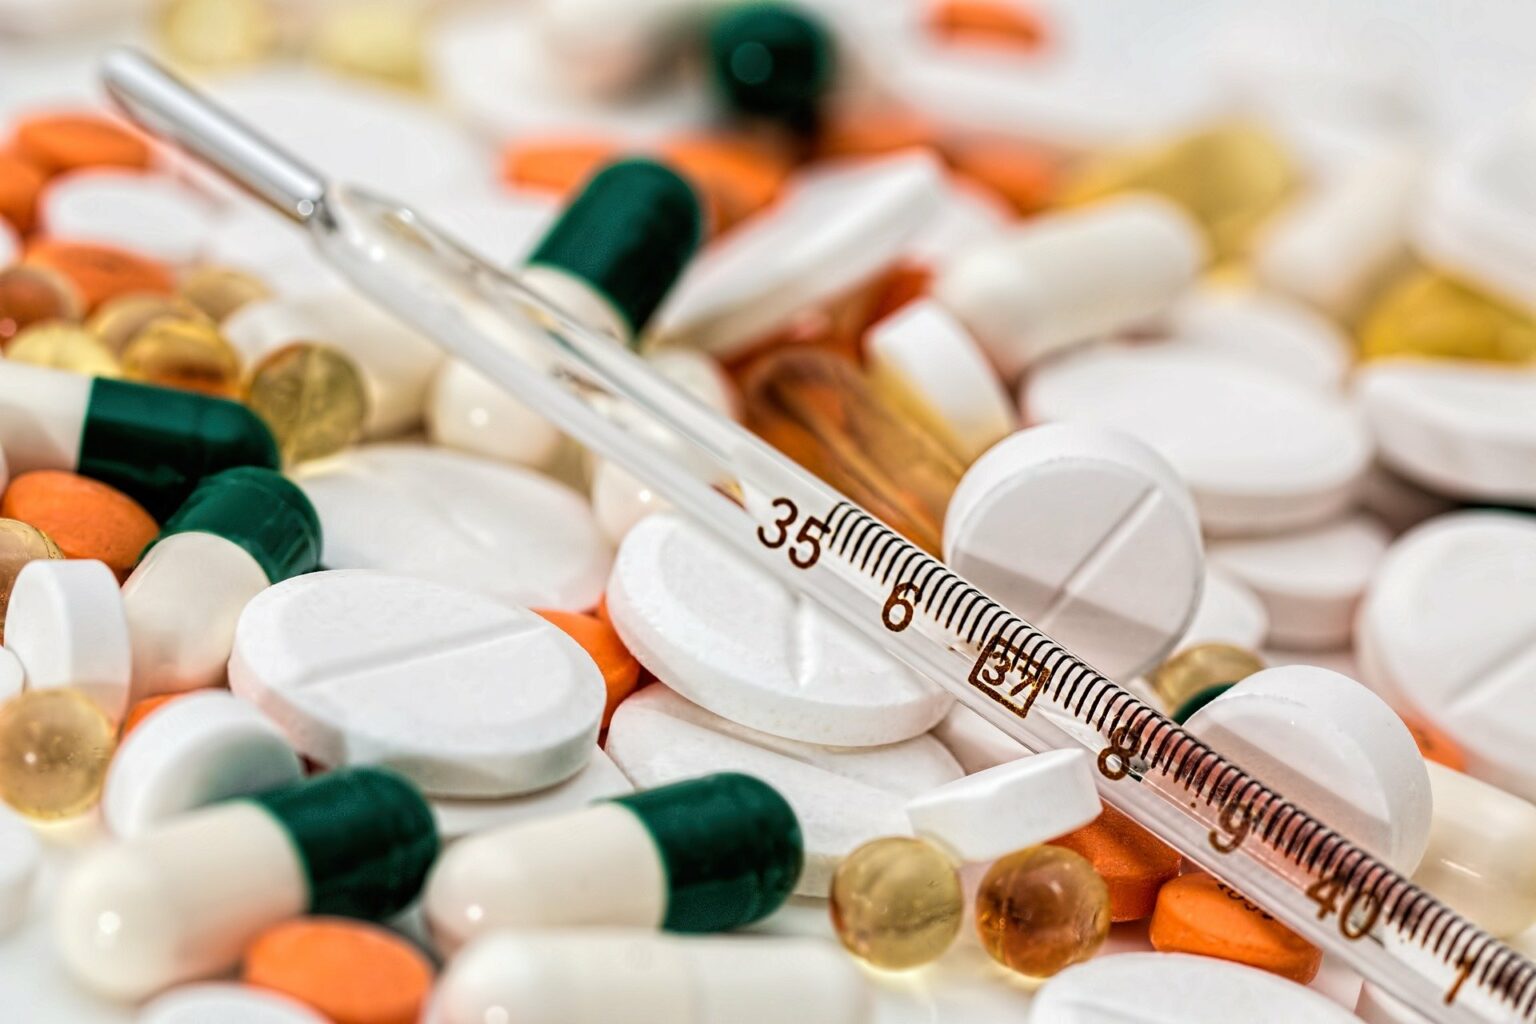 Vemos vários comprimidos de remédios e uma seringa (imagem ilustrativa).